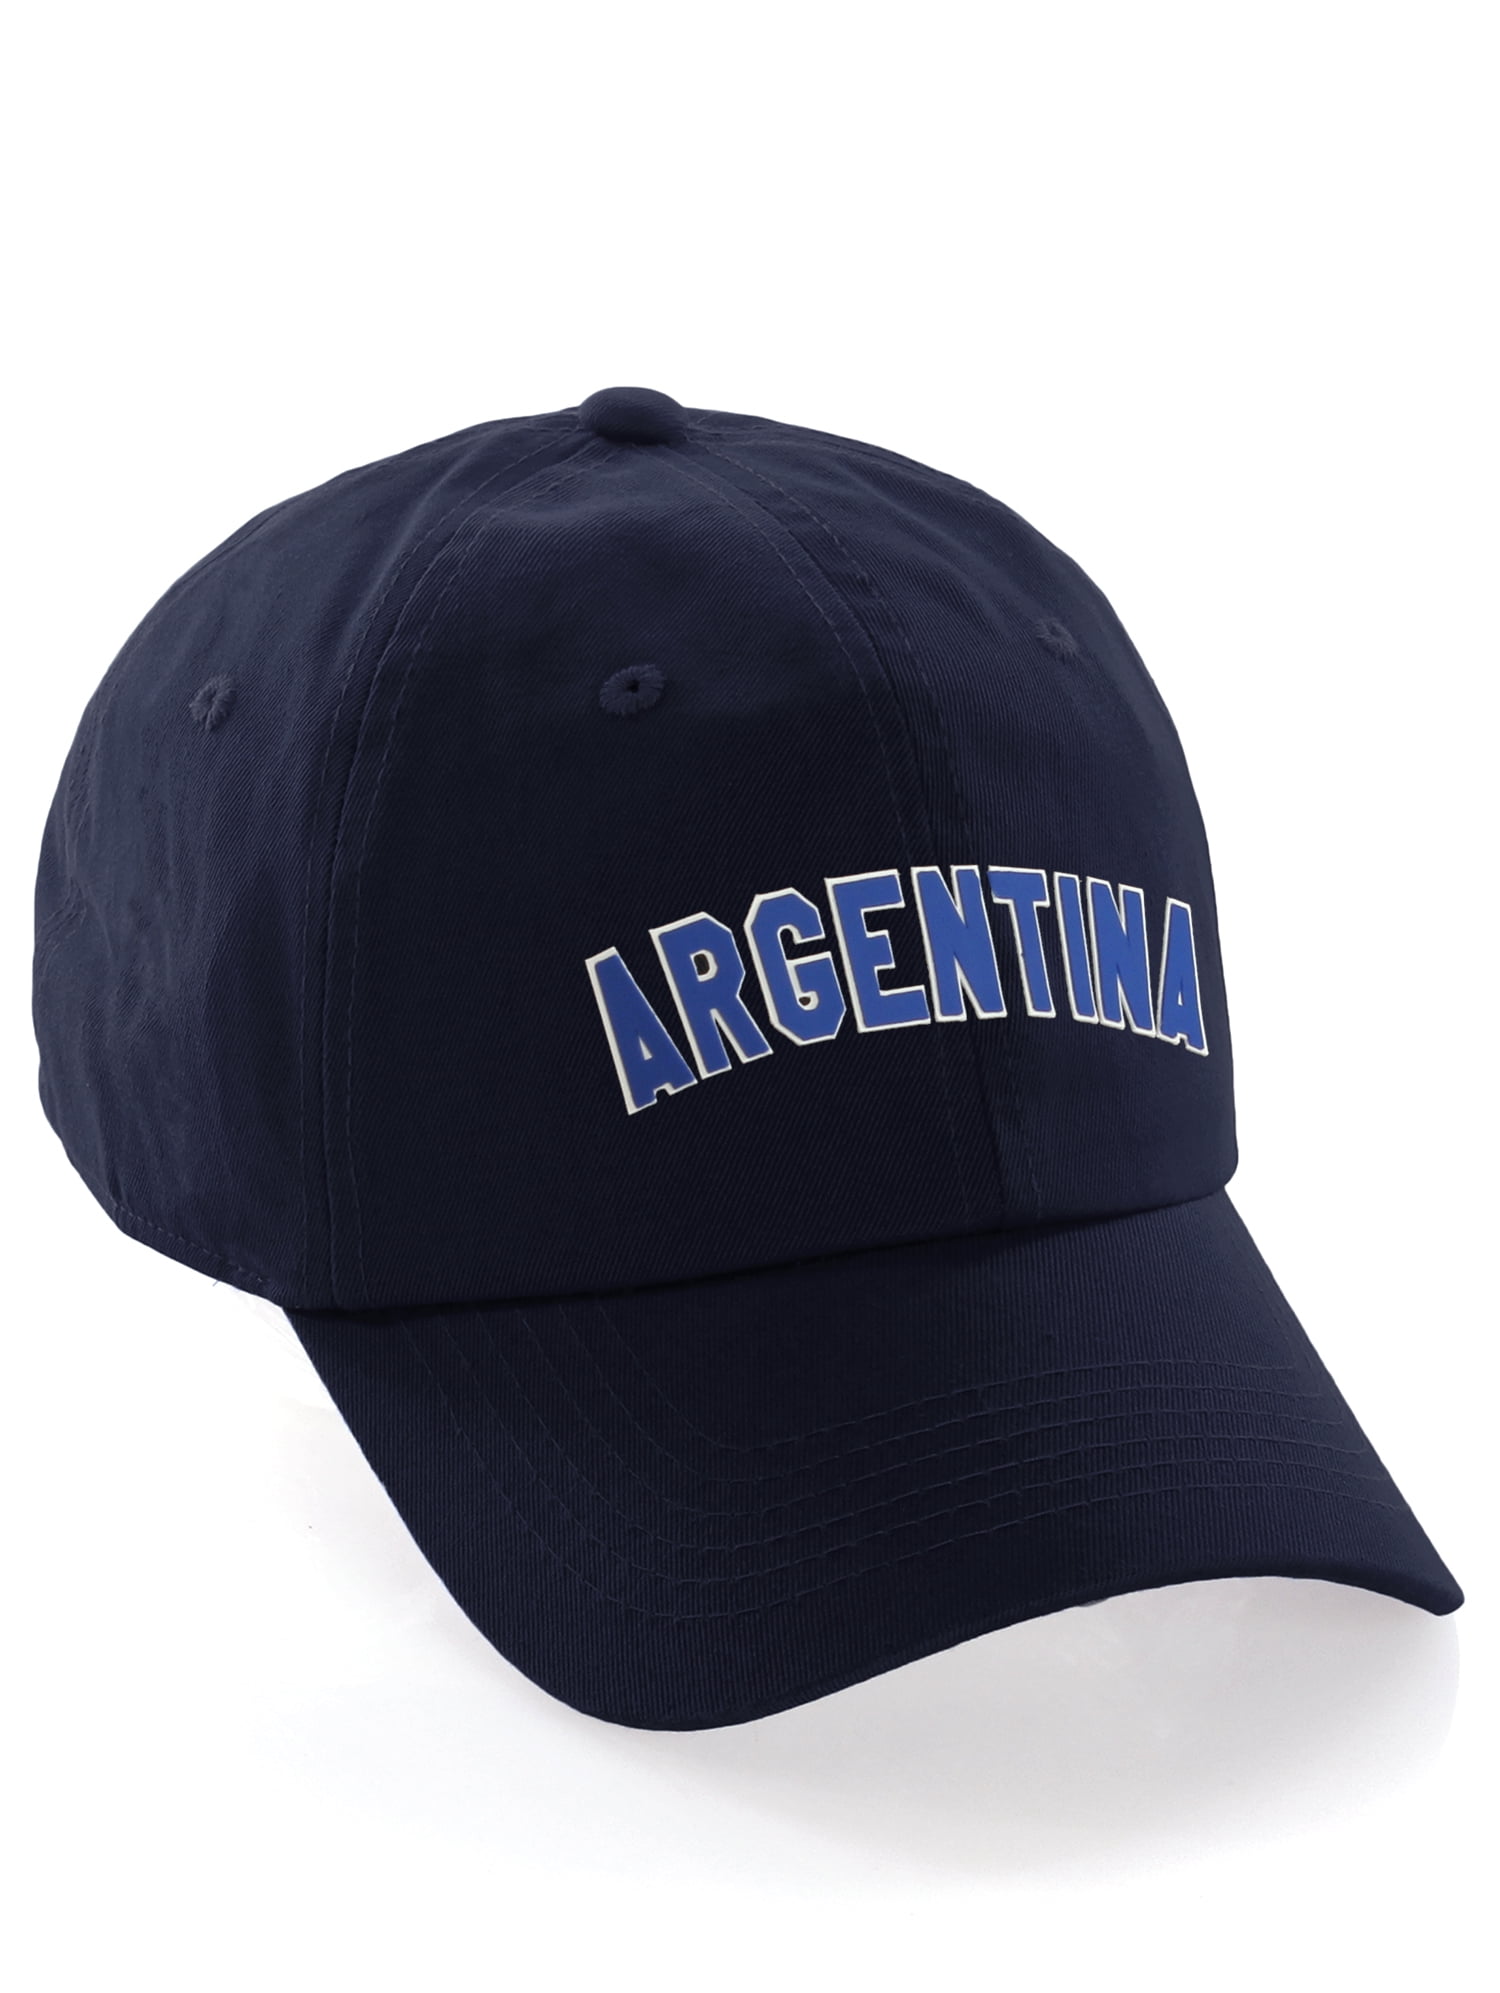 International World Sports Countries Baseball Hat Layered PVC